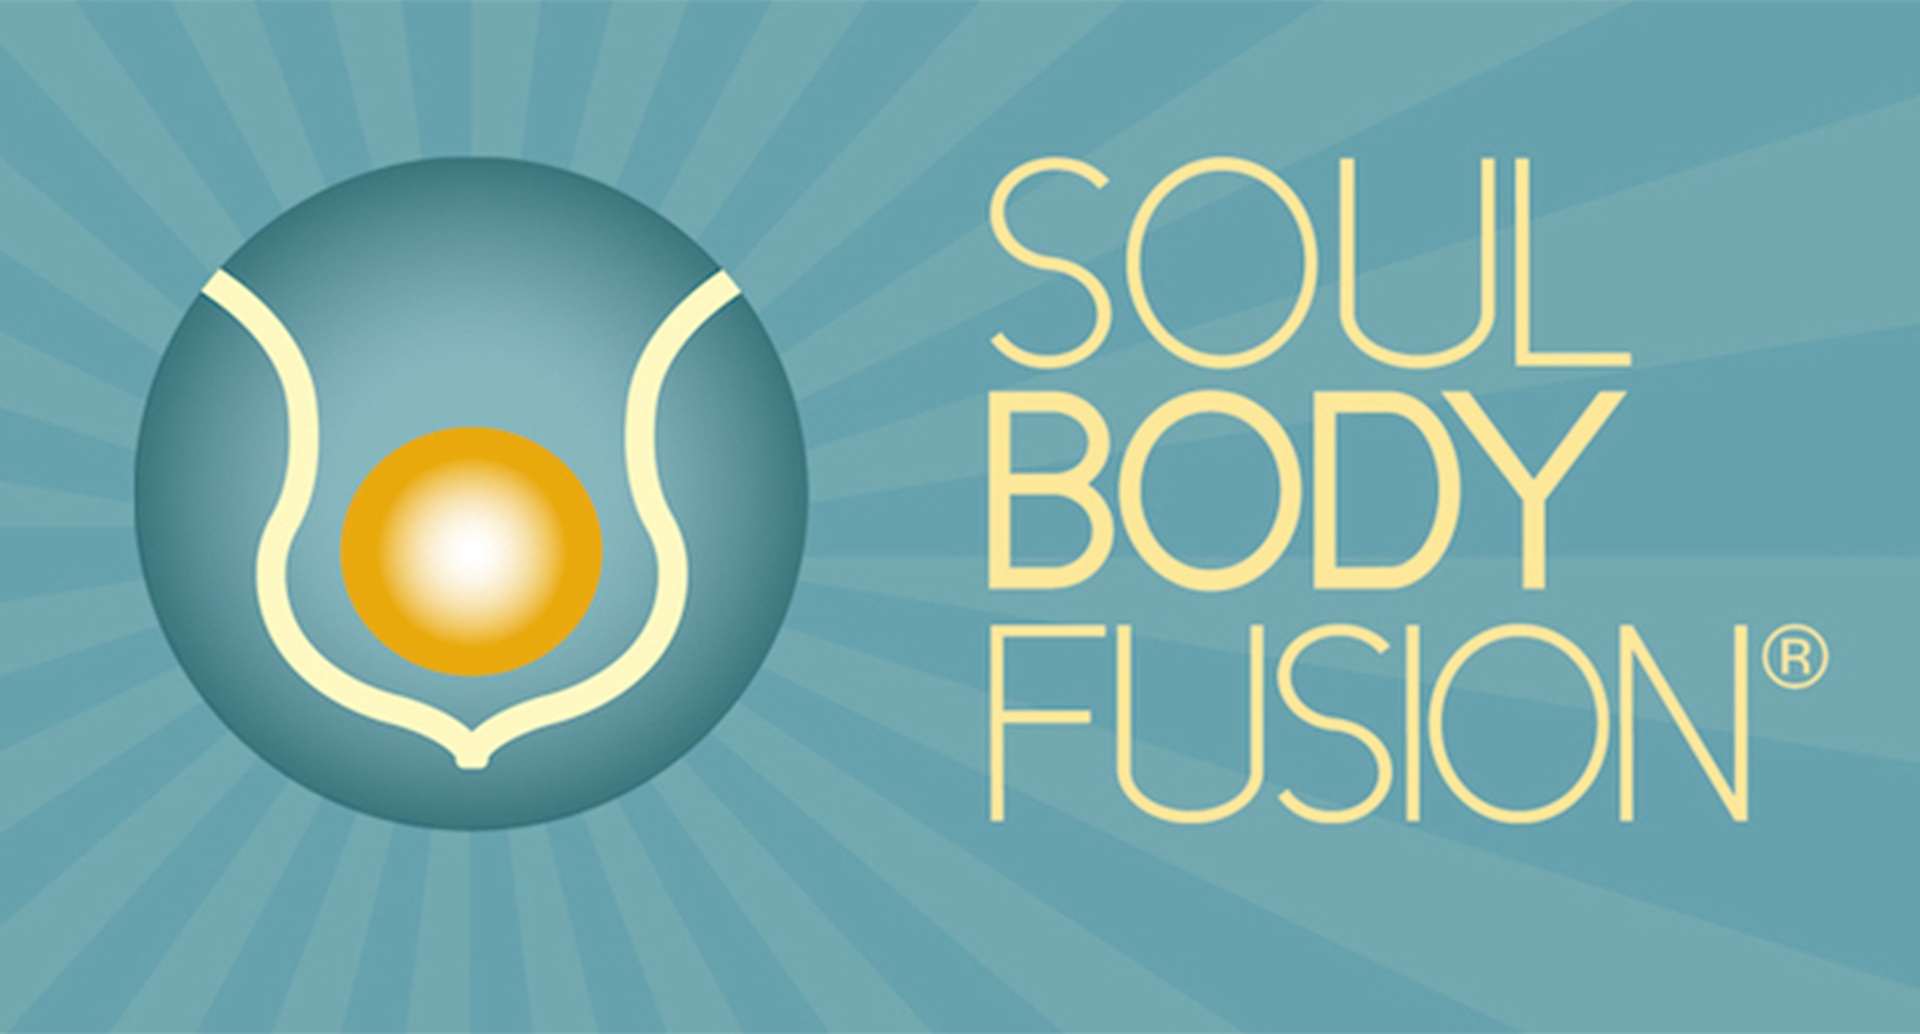 Soul Body Fusion®